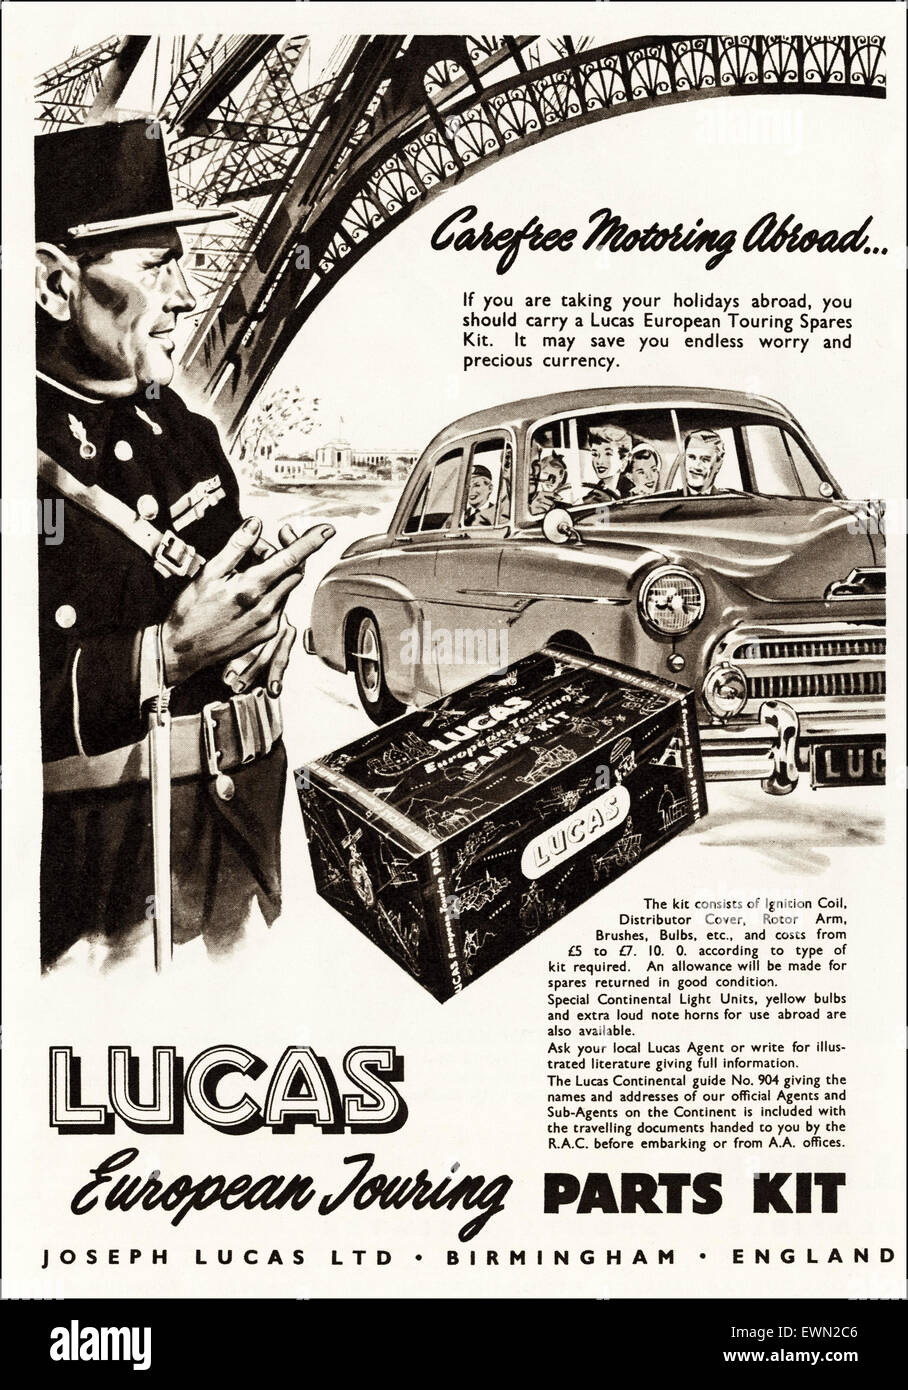 1950er Jahre Werbung ca. 1954 Magazin Anzeige für Lucas Autoteile von  Joseph Lucas Ltd von Birmingham England Stockfotografie - Alamy